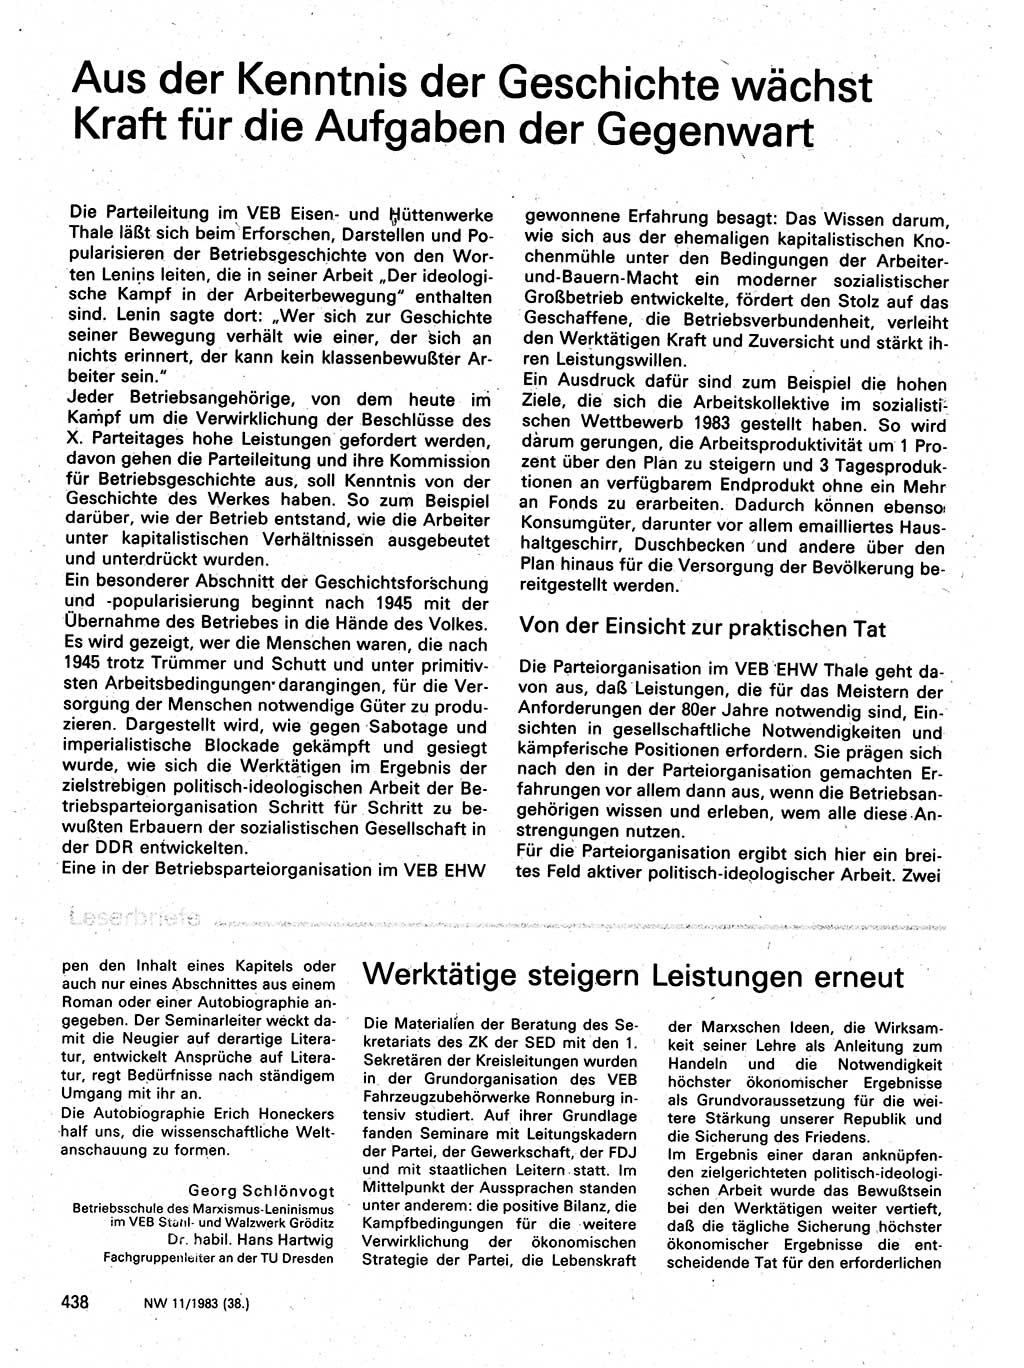 Neuer Weg (NW), Organ des Zentralkomitees (ZK) der SED (Sozialistische Einheitspartei Deutschlands) für Fragen des Parteilebens, 38. Jahrgang [Deutsche Demokratische Republik (DDR)] 1983, Seite 438 (NW ZK SED DDR 1983, S. 438)